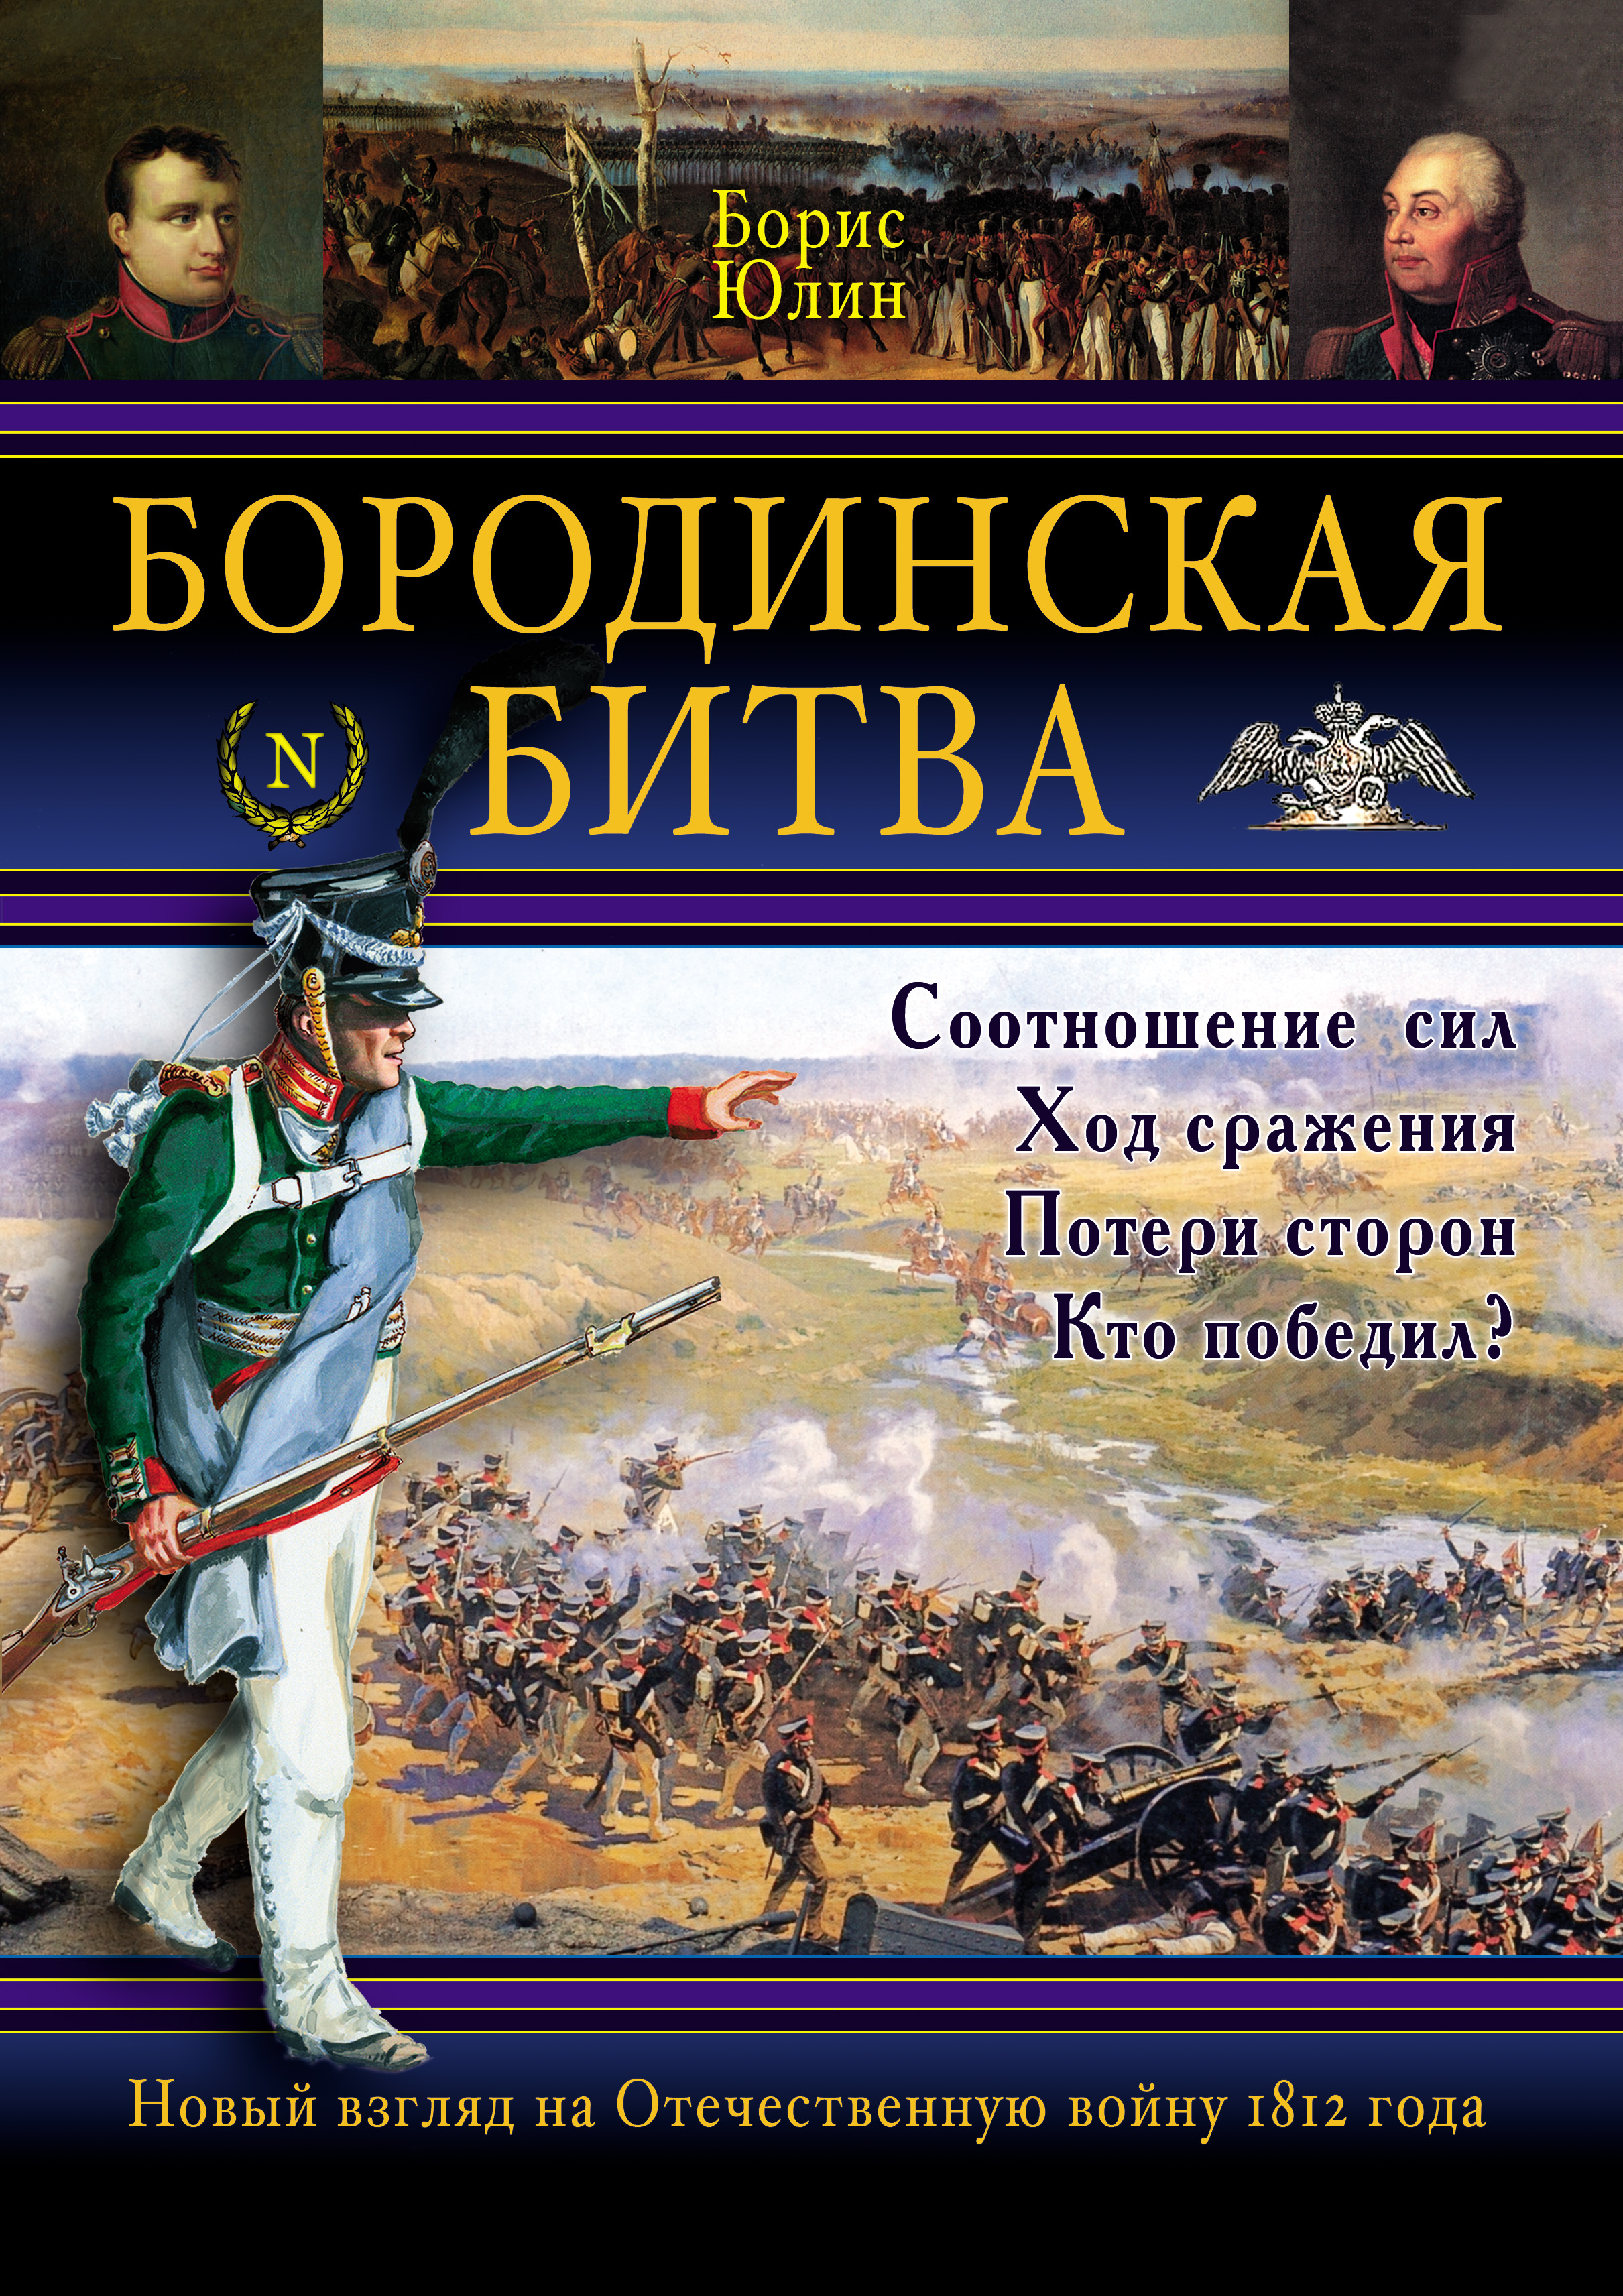 Книги про битвы. Юлин Бородинская битва книга. Книга Бородинская битва 1812. Книги о Бородинском сражении 1812 года.